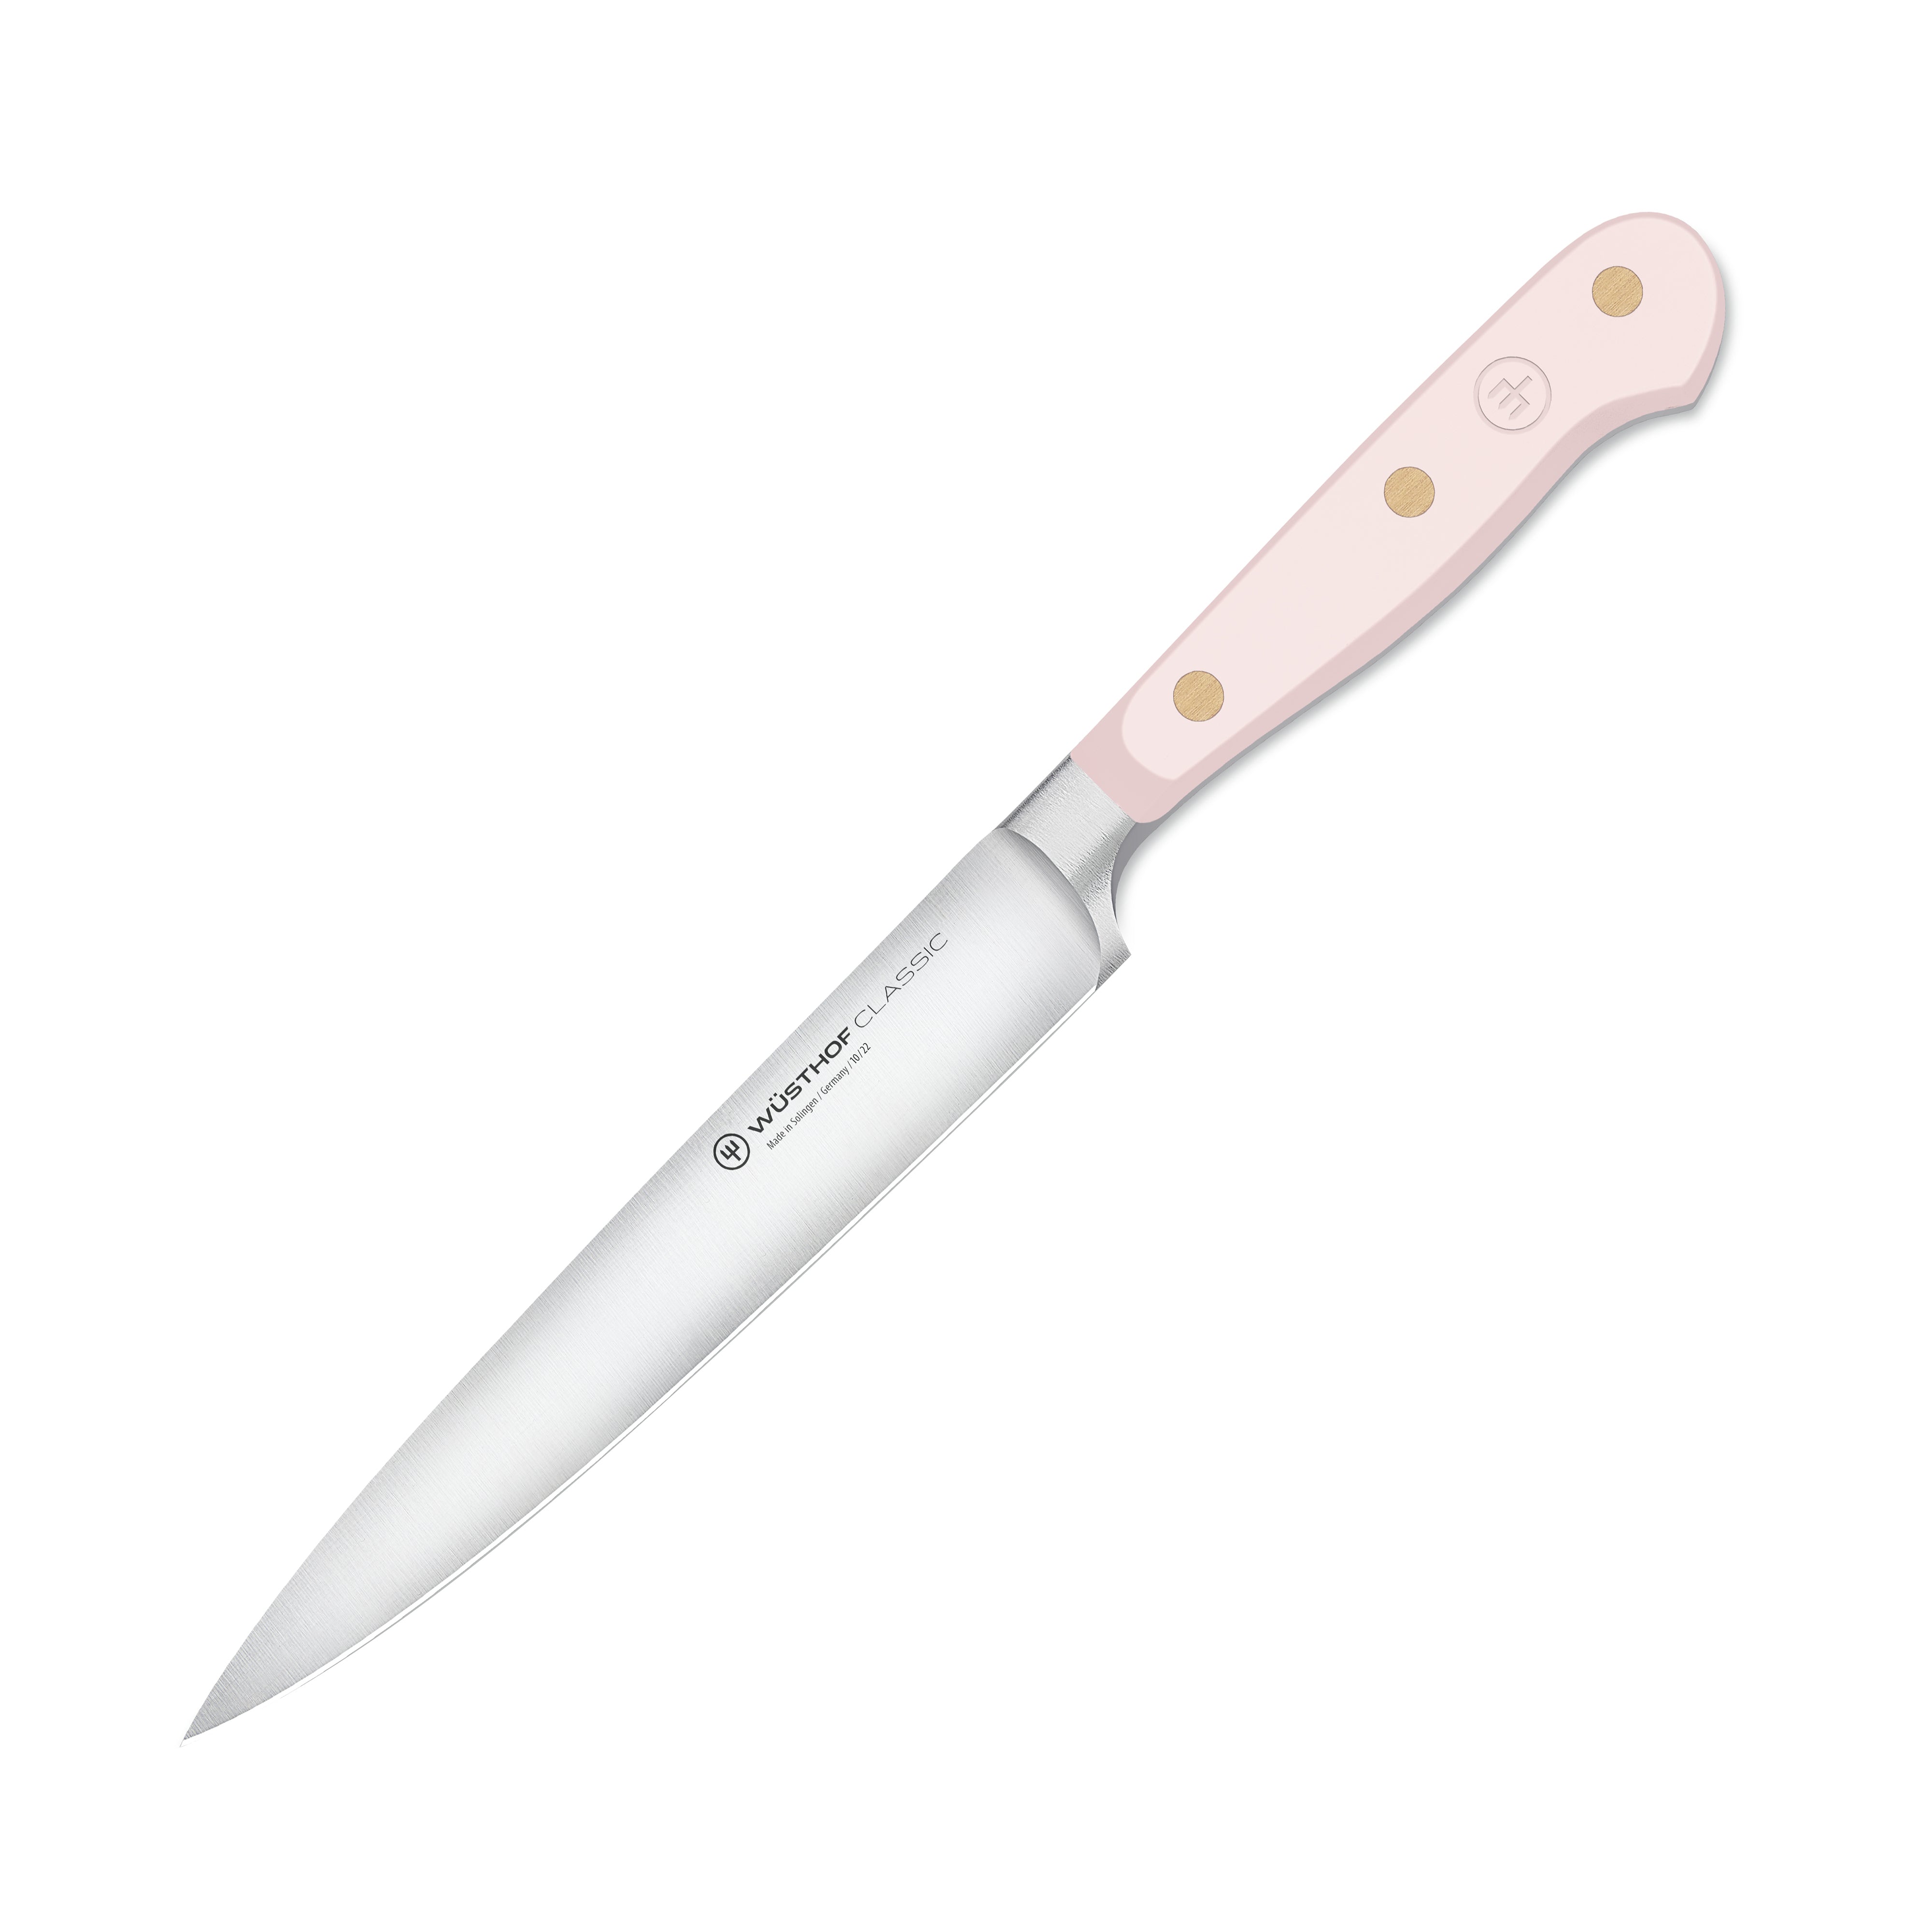 Wusthof Classic Utility Knife - 6